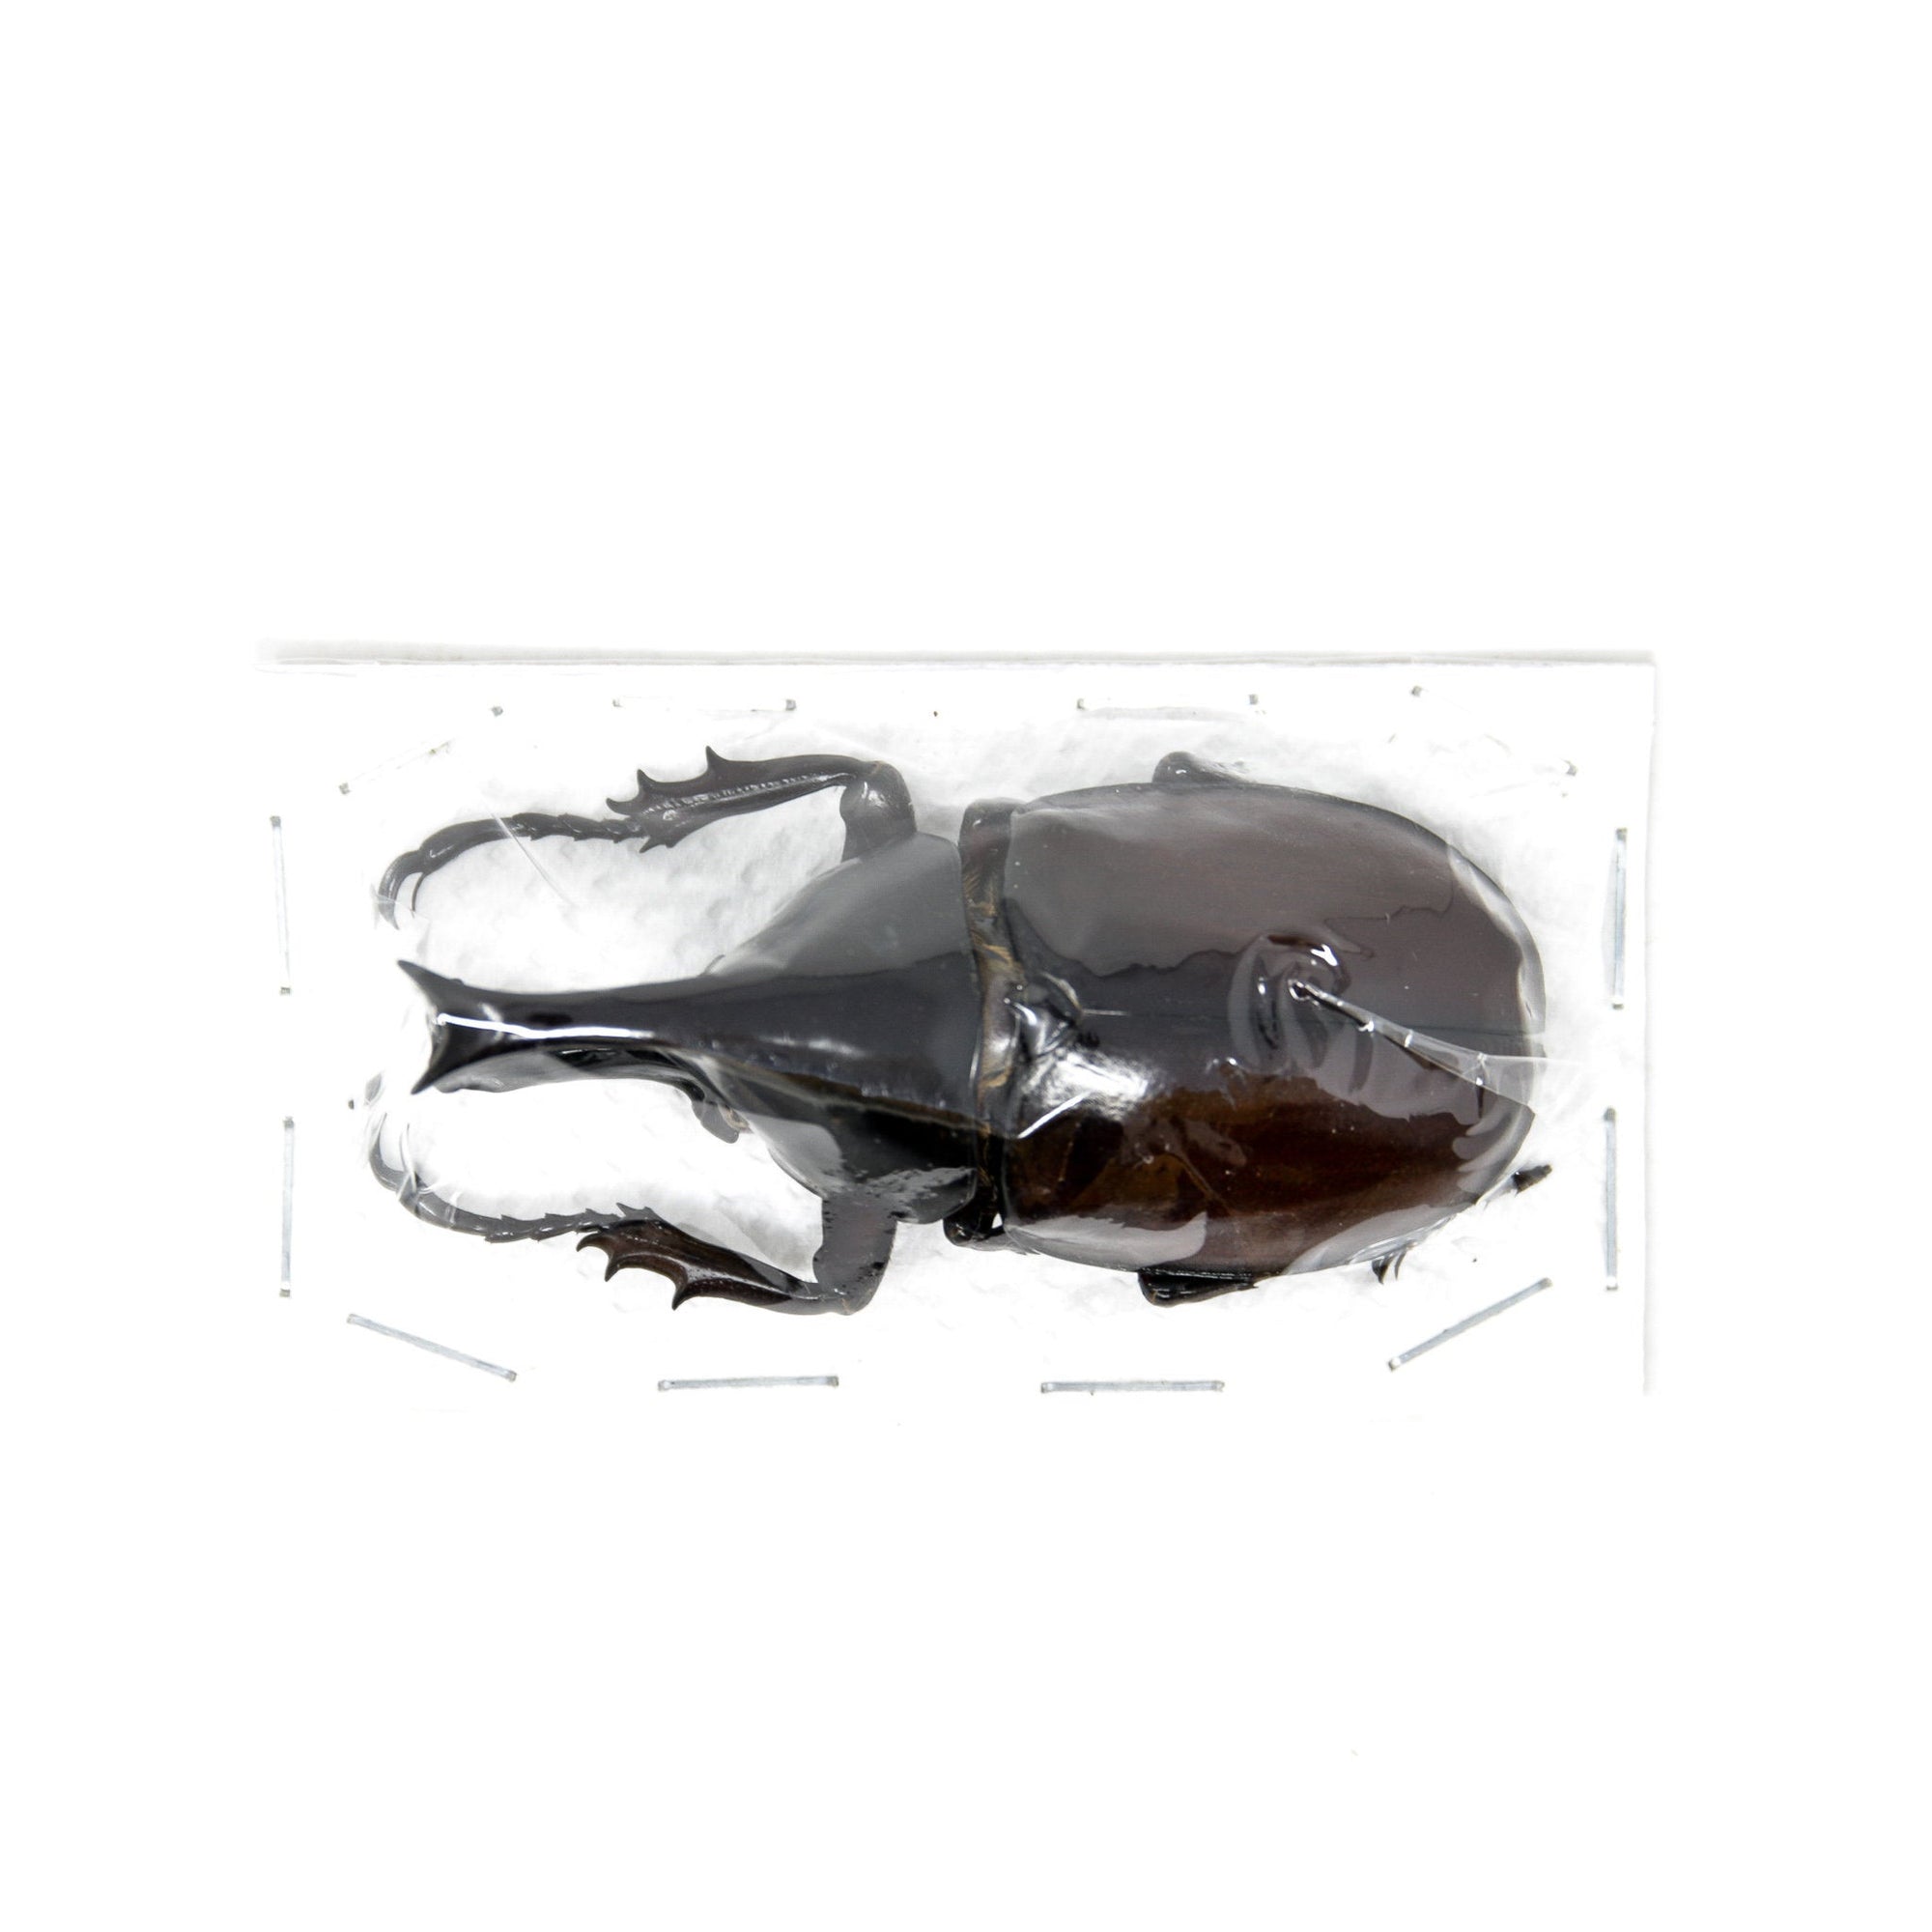 Thai Rhino Beetles (Xylotrupes gideon) A1 Unmounted Specimens